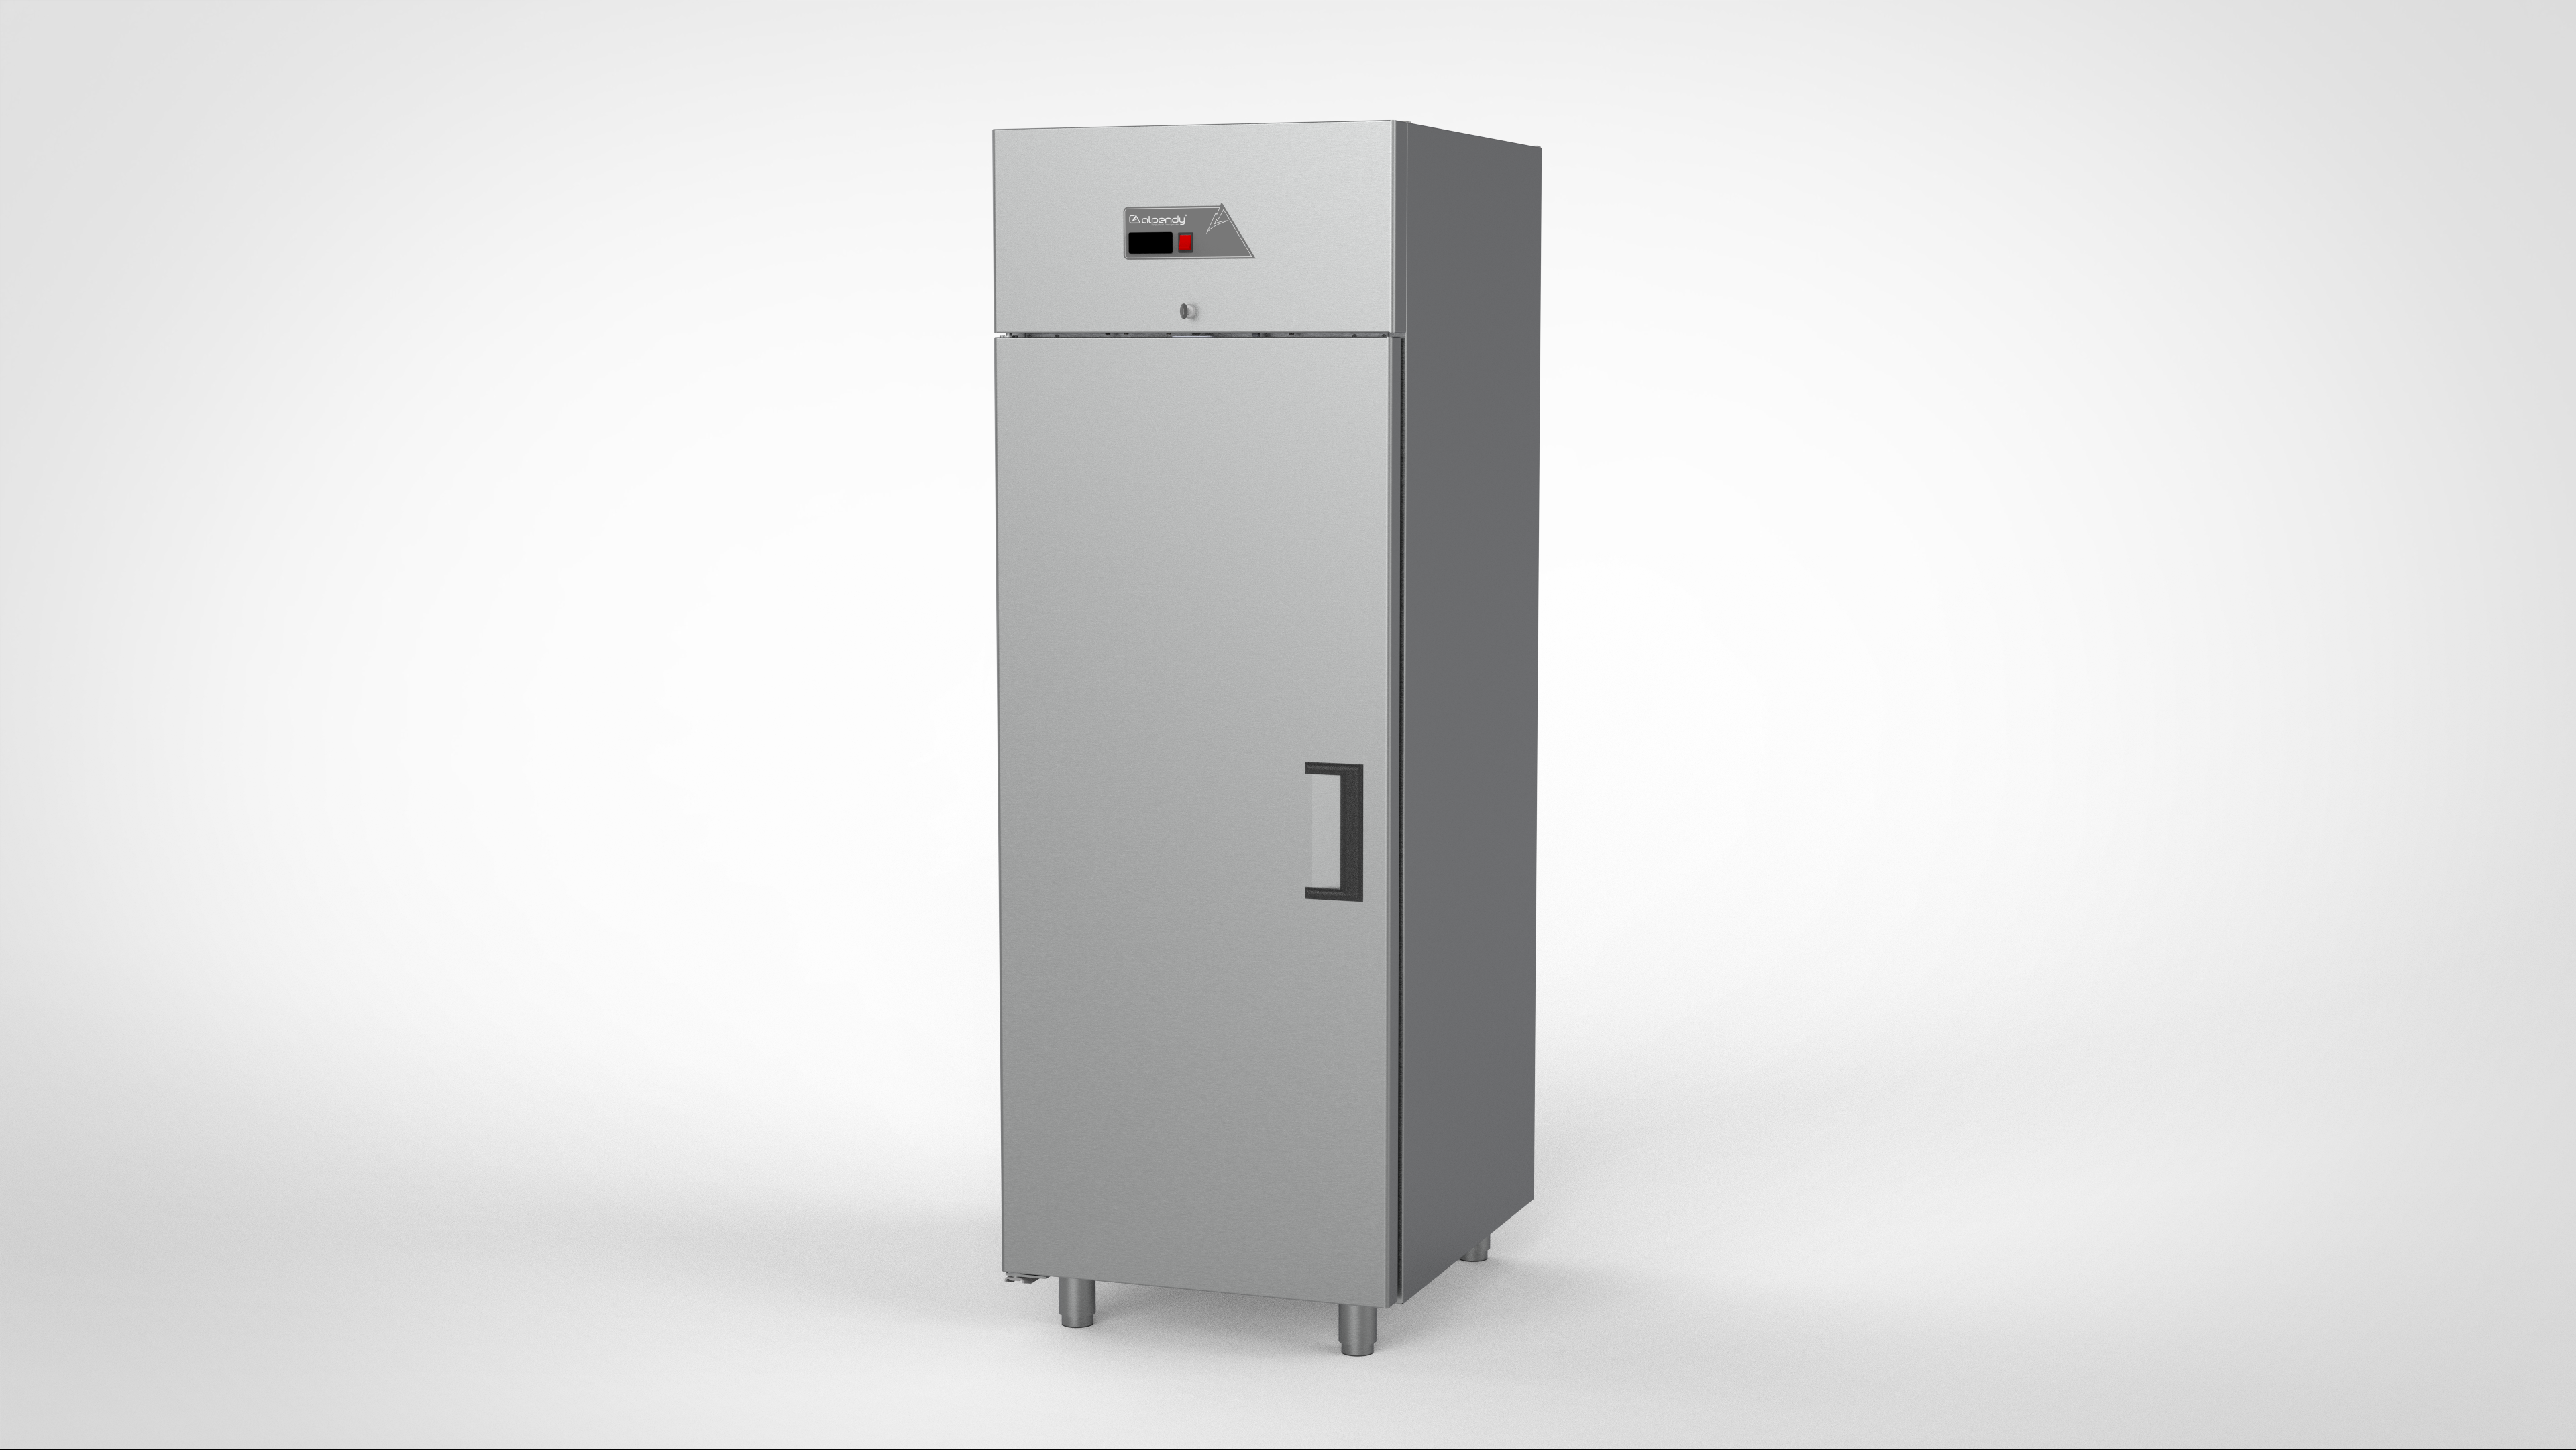 Vertical type one door gastronorm refrigerator compressor up